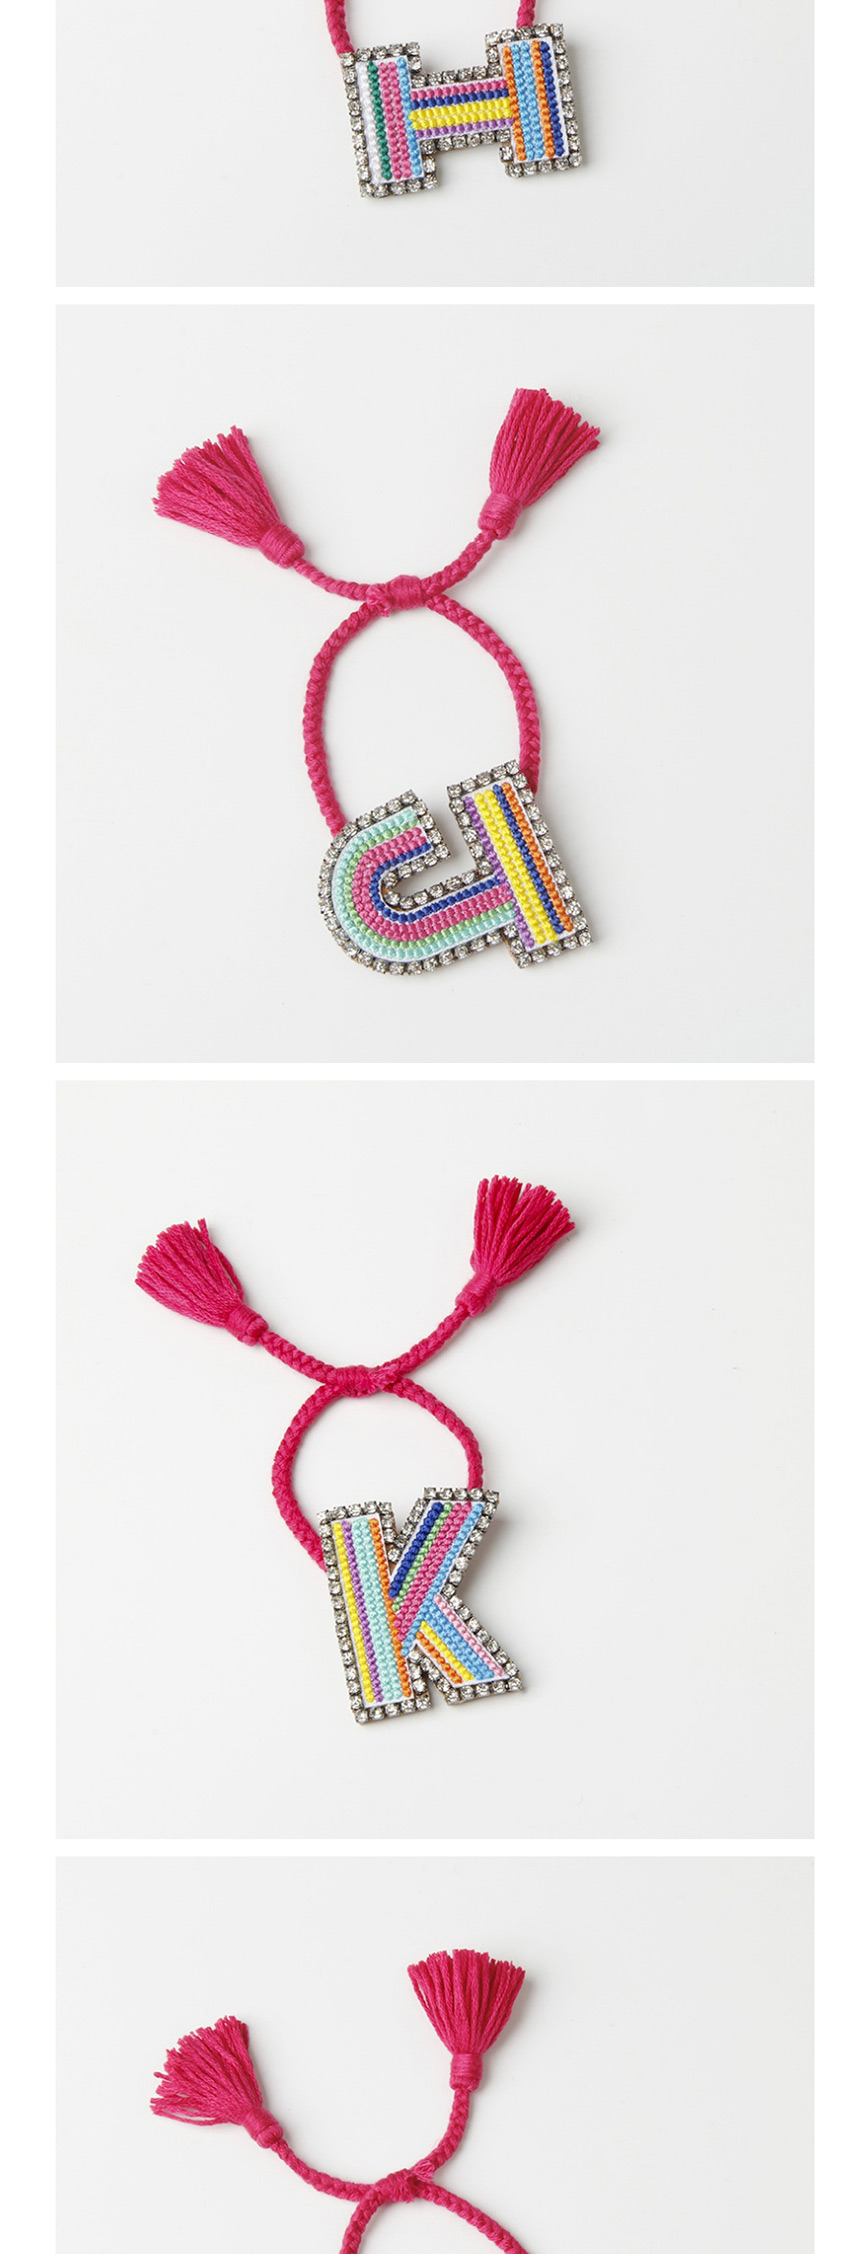 Fashion I Color Embroidered Woven Adjustable Crystal Alphabet Bracelet,Fashion Bracelets